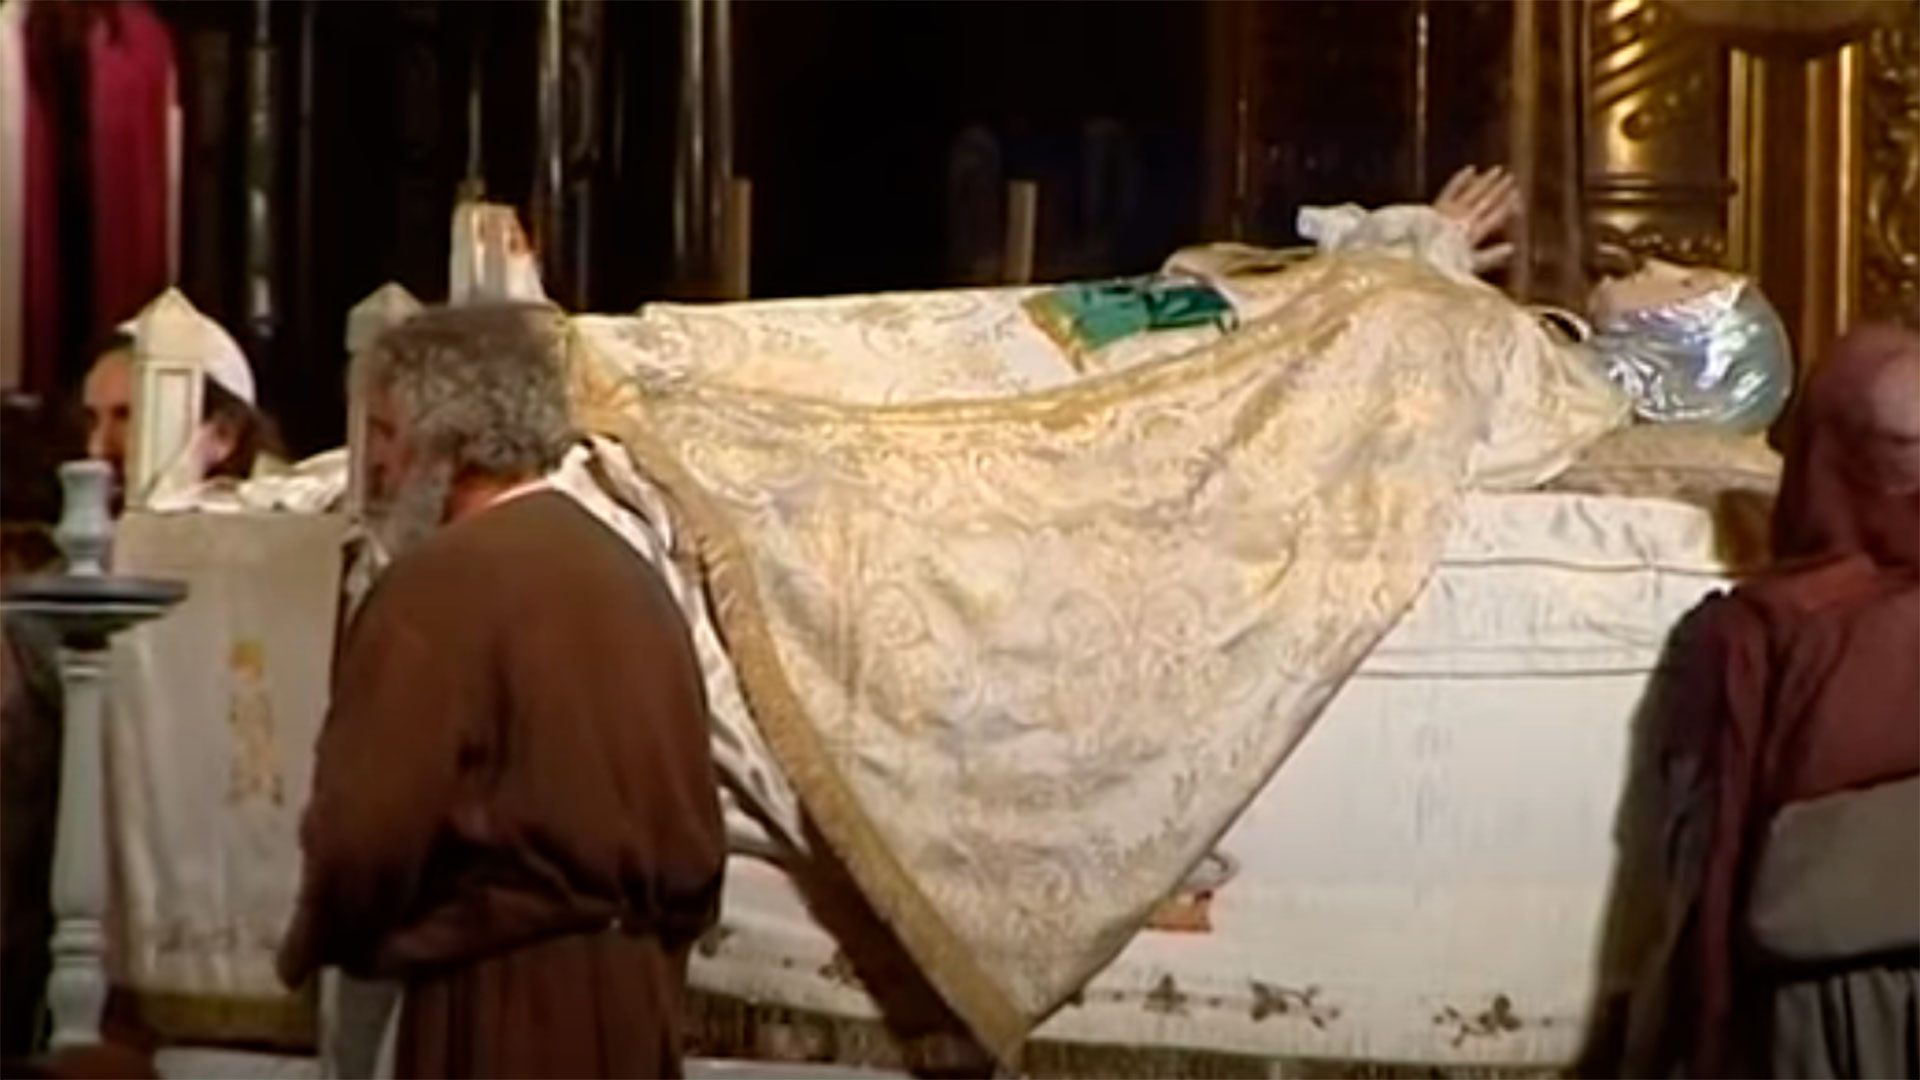 La representación del drama sacro-lírico religioso que recrea la Dormición, Asunción y Coronación de la Virgen María en la iglesia Santa María de Elche, en España, considerado "Patrimonio de la Humanidad" por la UNESCO